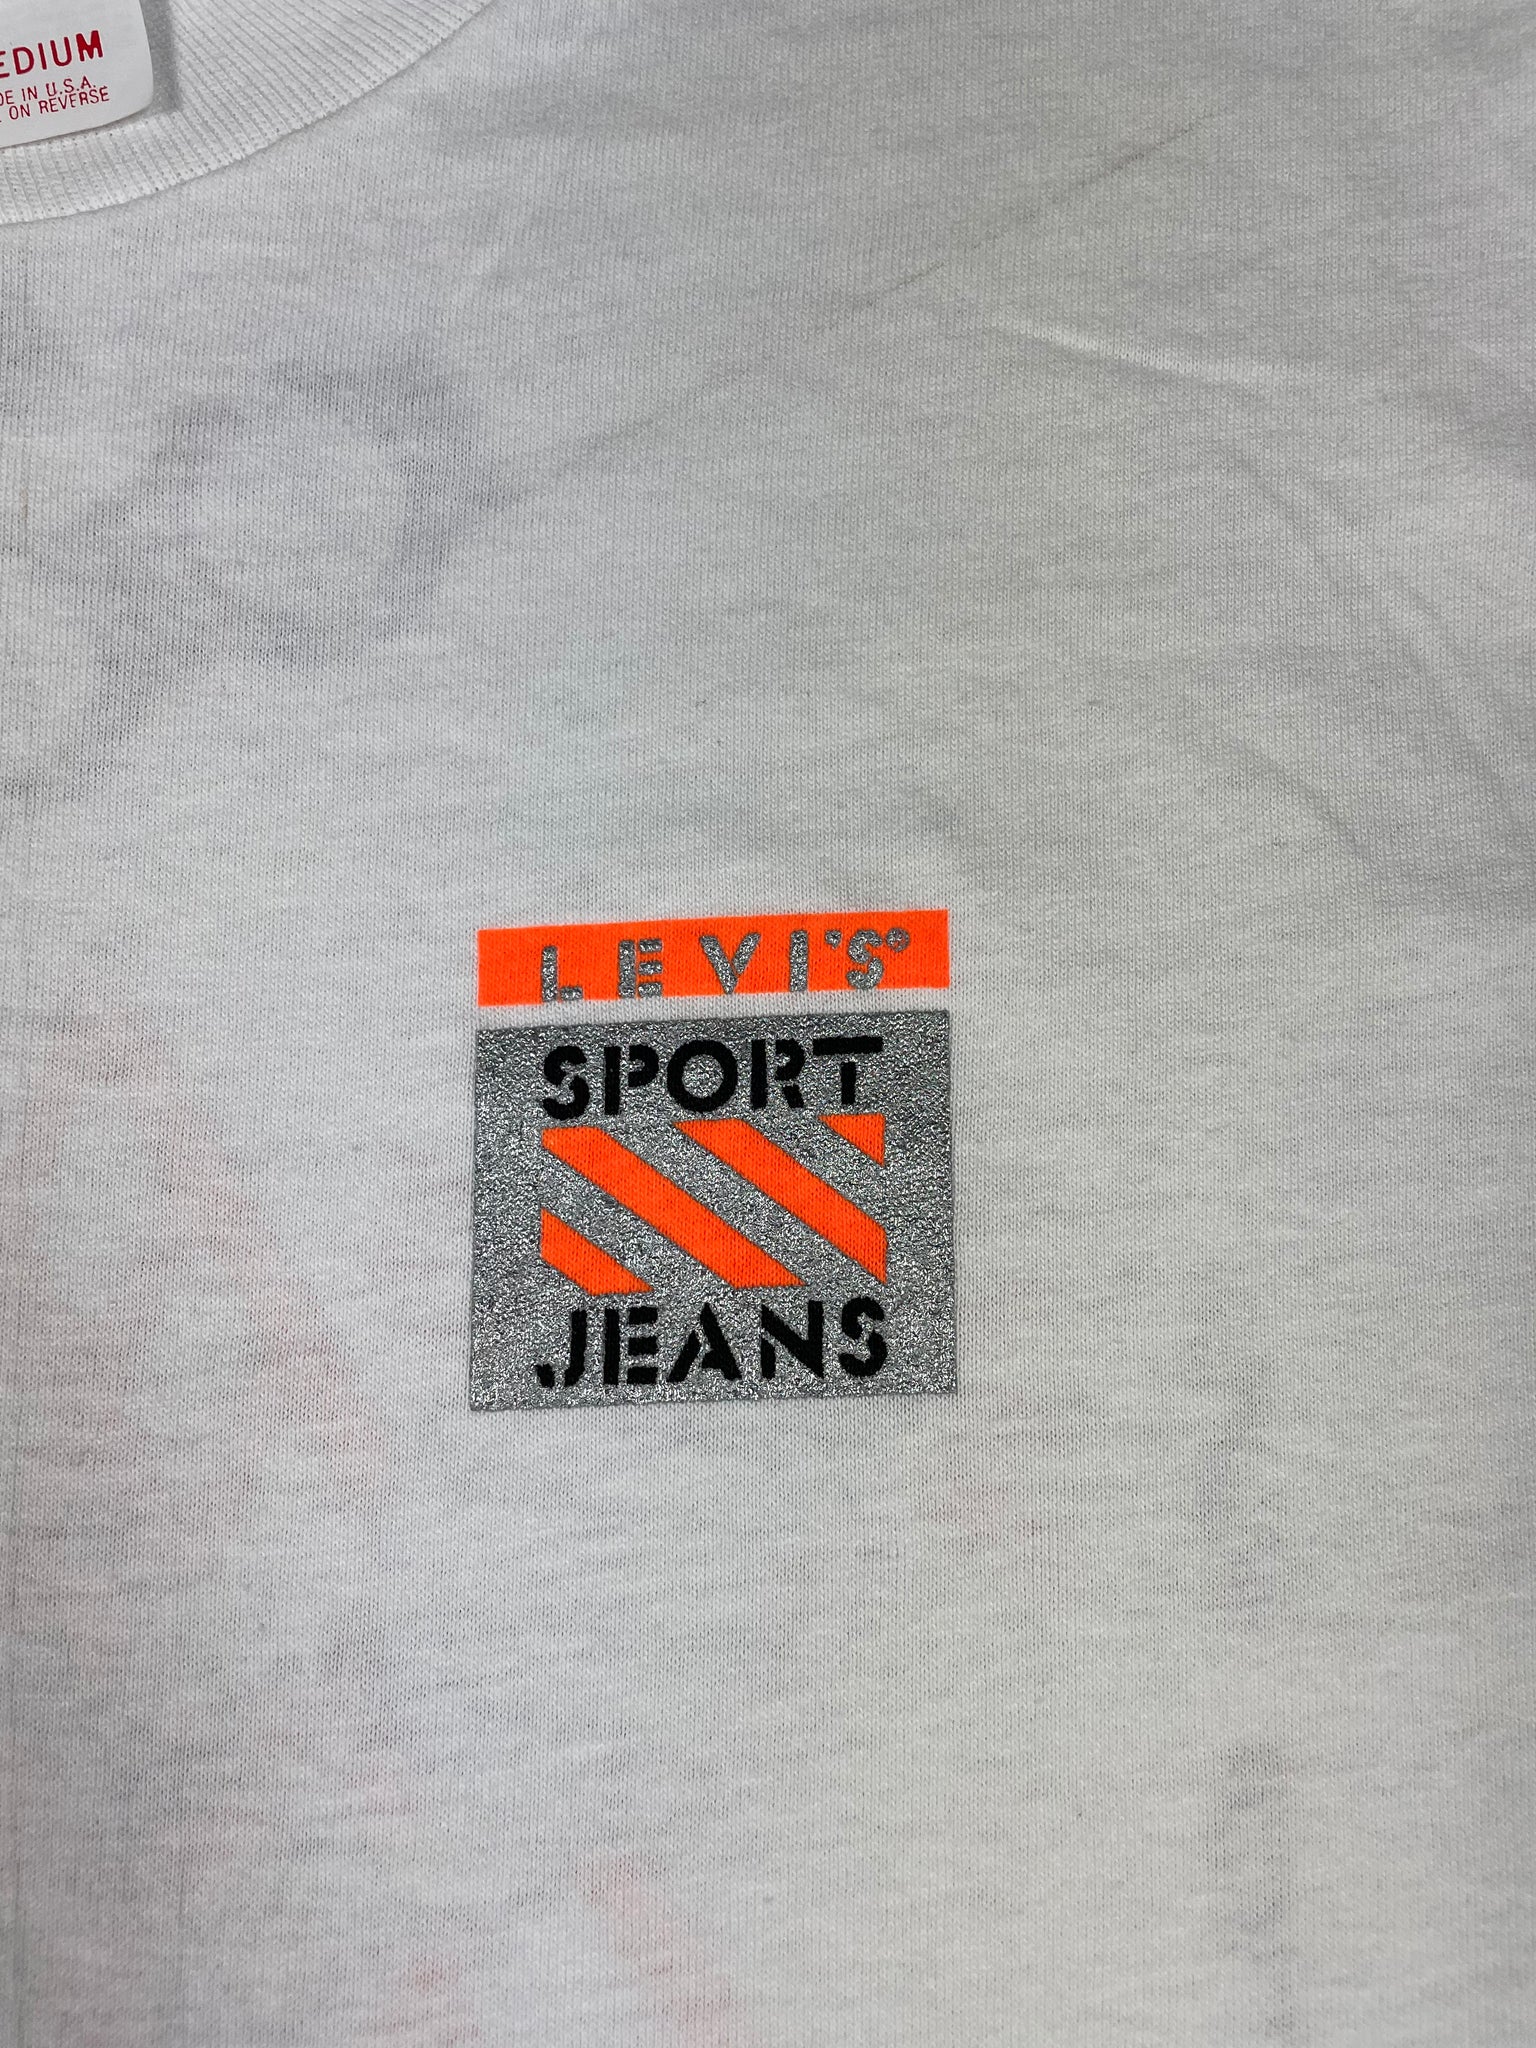 Vintage "Levi's Sport Jeans" Tee (JYJ-151)